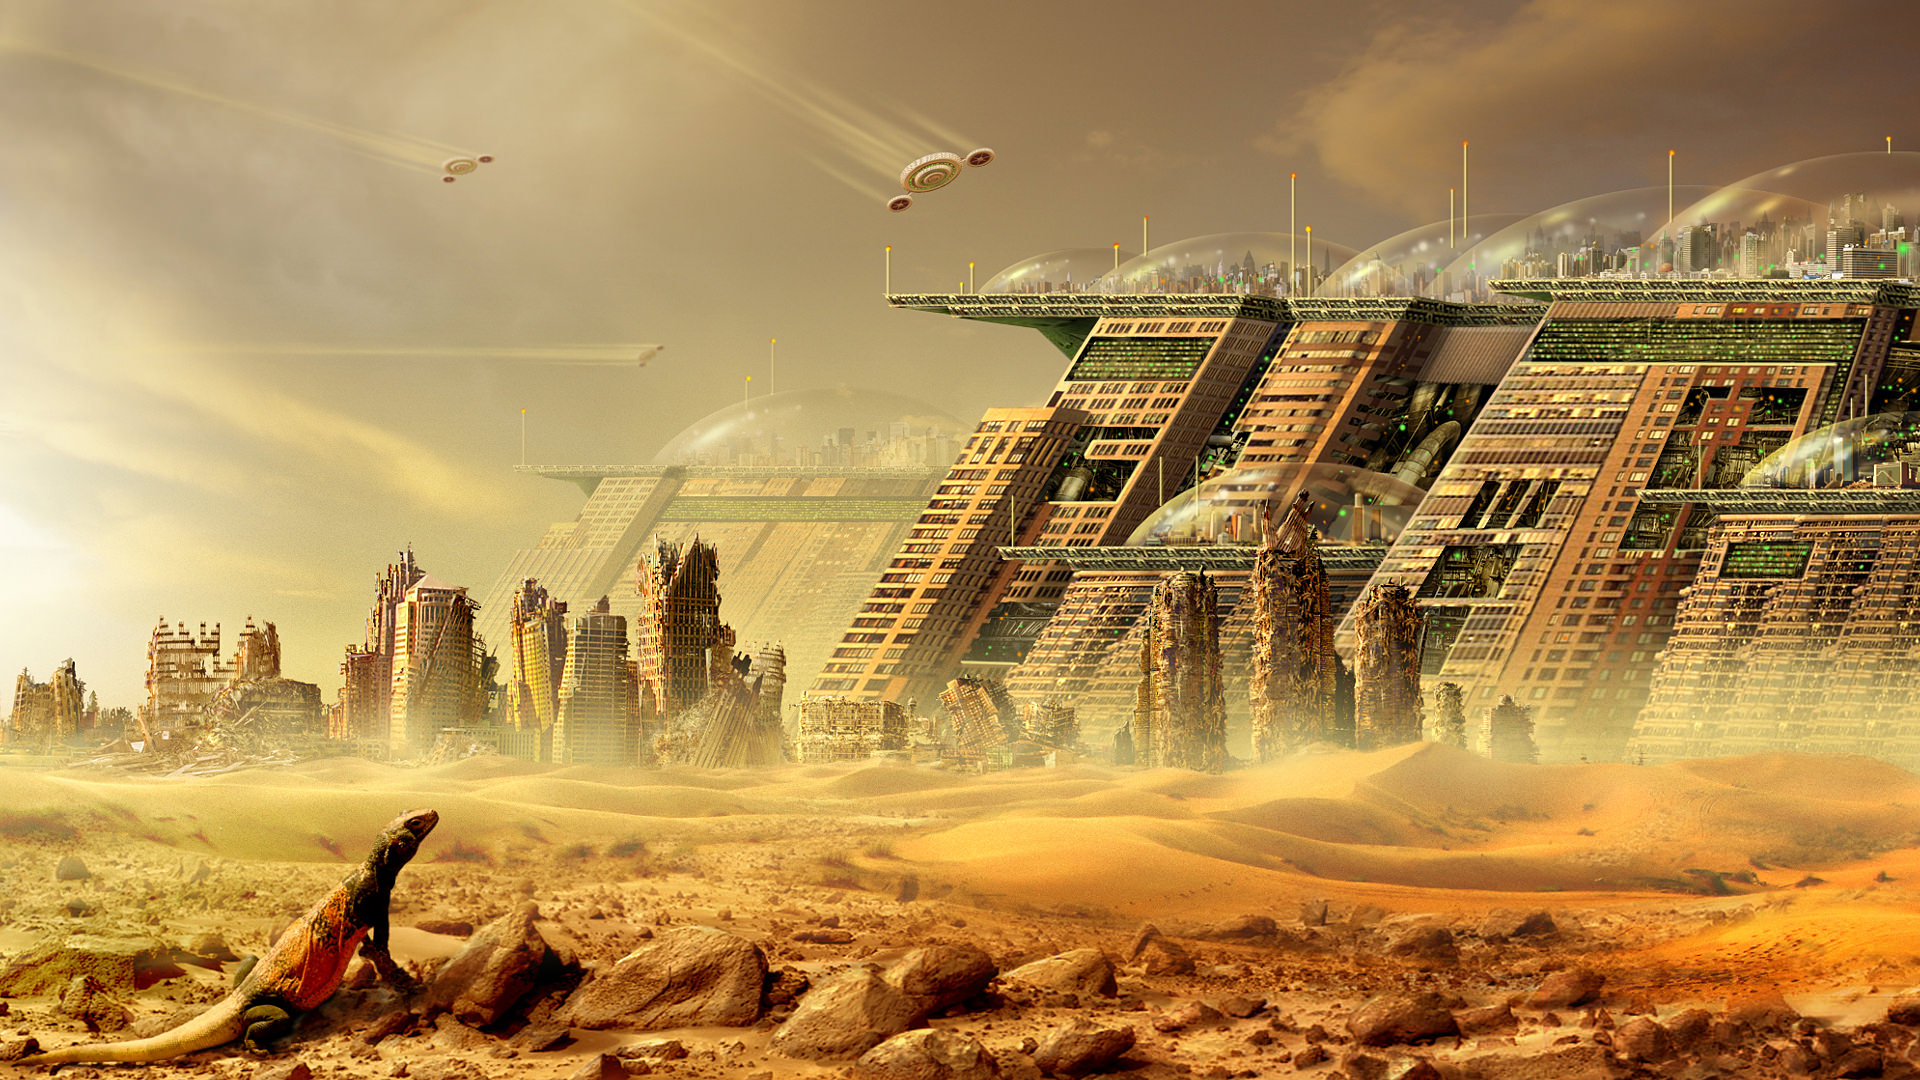 the new desert city